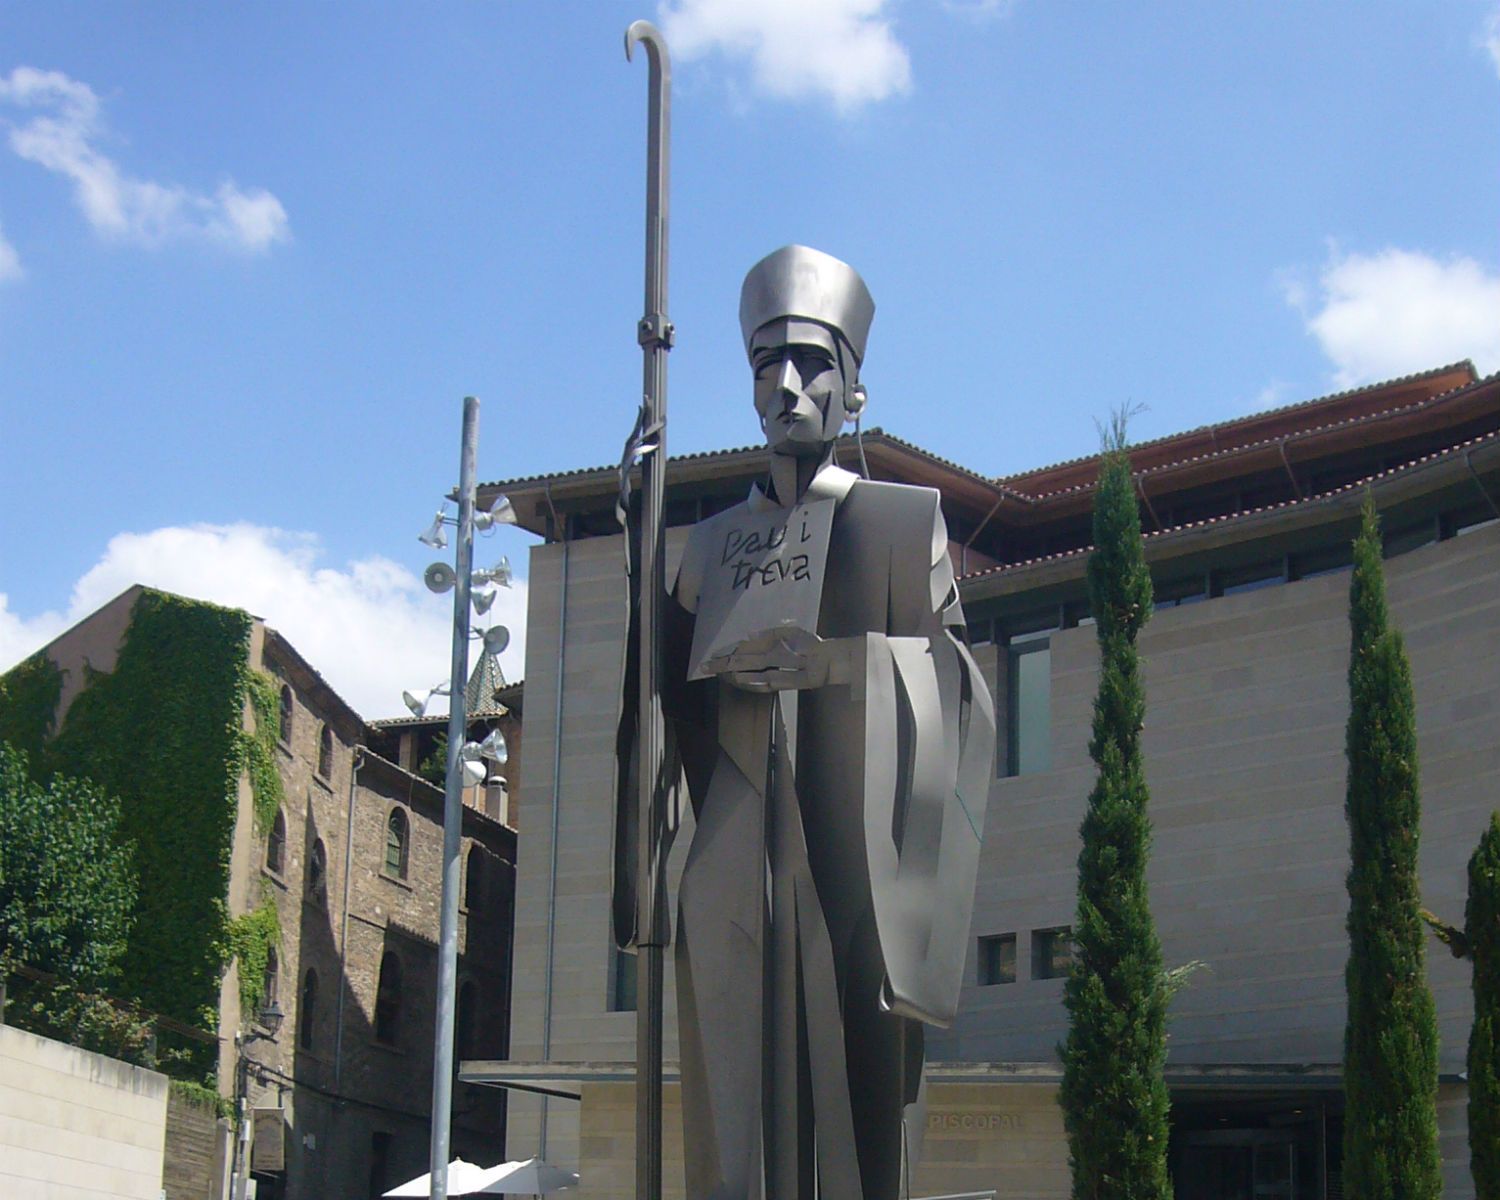 Monument a l'abat Oliba a la plaça del Bisbe de Vic, davant del Museu Episcopal